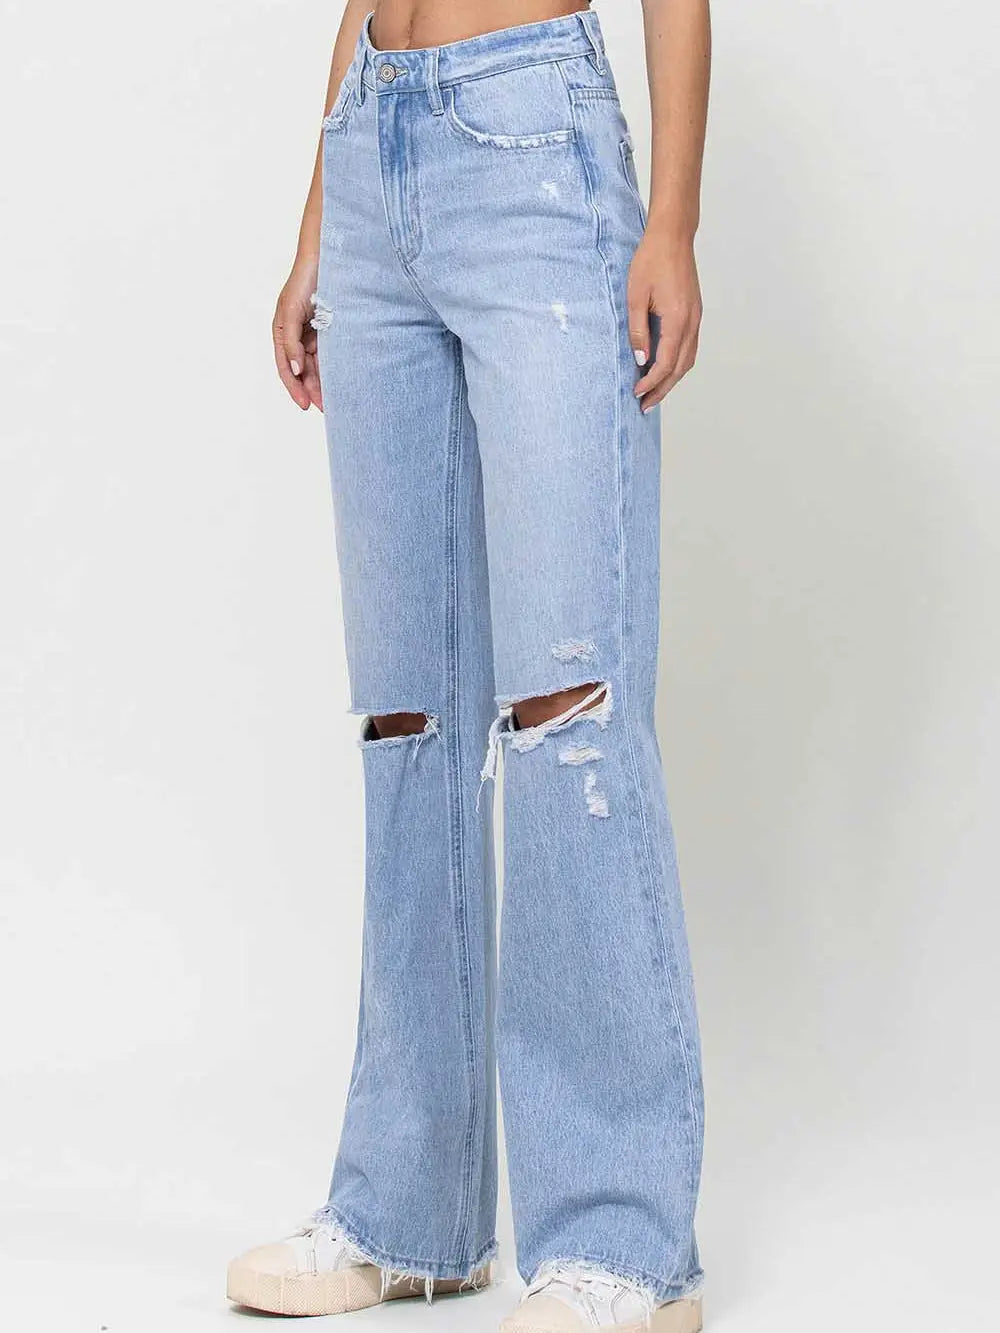 90's Vintage Light Wash Flare Jeans